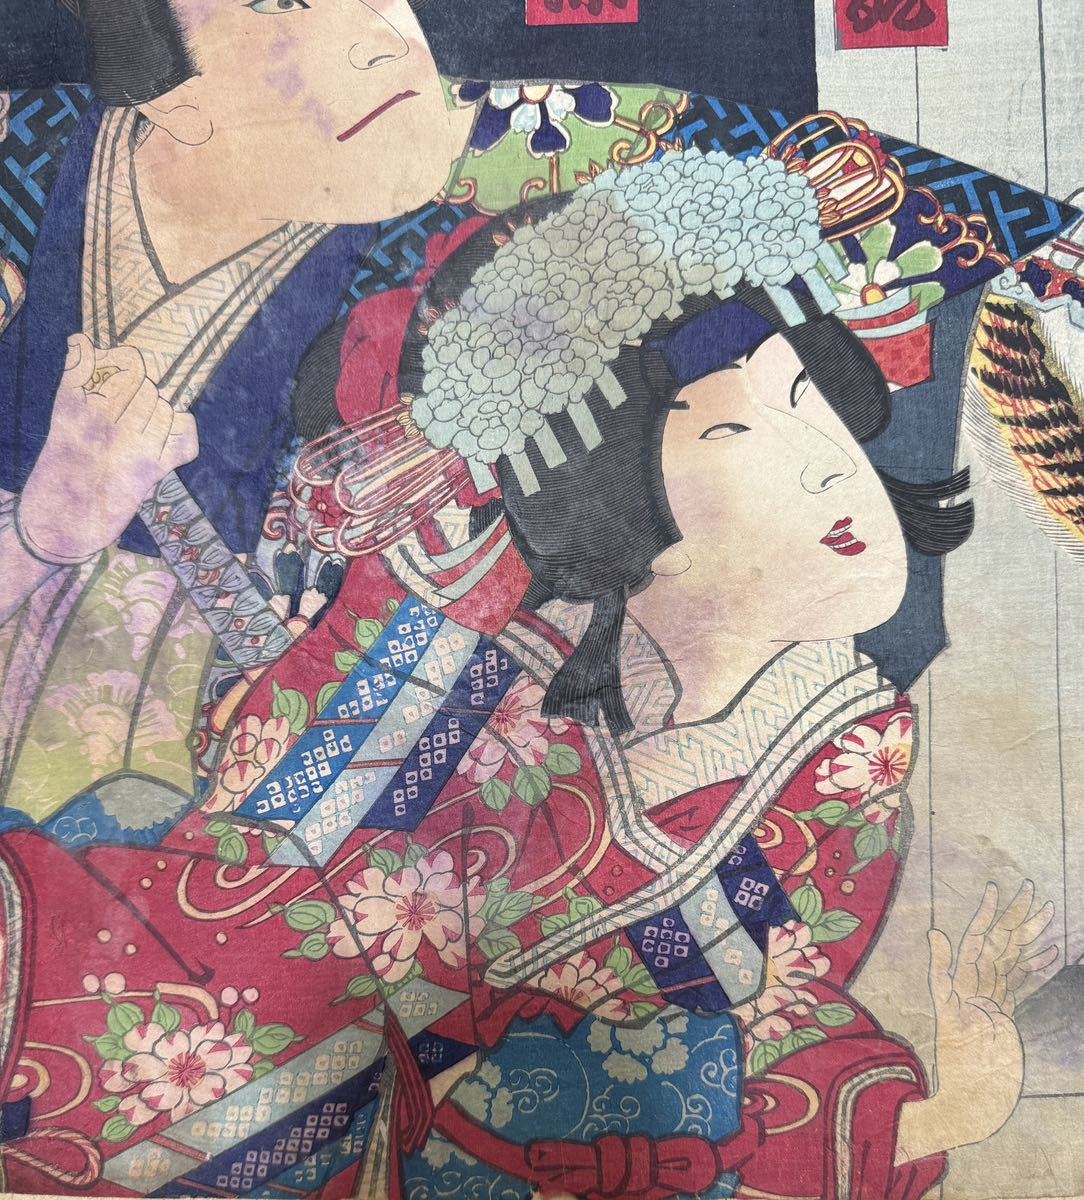  Edo период / подлинный произведение .. страна . подлинный товар картина в жанре укиё гравюра на дереве сцена из кабуки изображение актеров газонная трава .... большой размер три листов .. обратная сторона удар .23